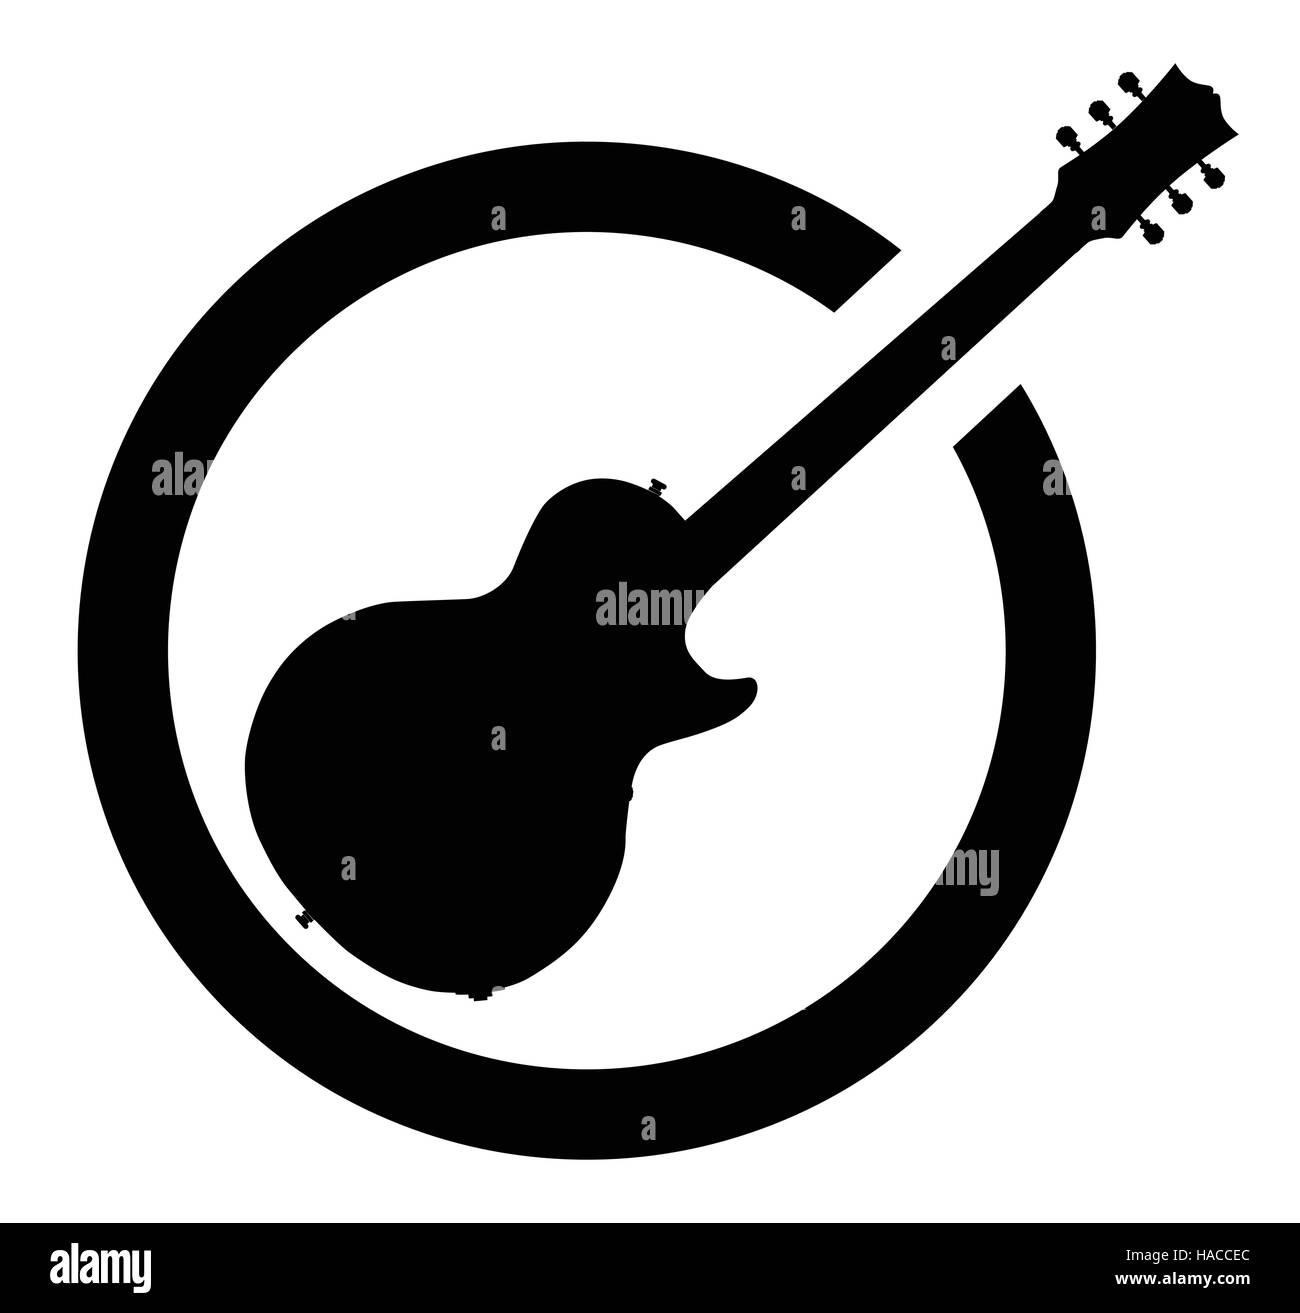 La definitiva rock and roll guitar come gomma timbro di inchiostro in bianco e nero, isolato su uno sfondo bianco. Illustrazione Vettoriale